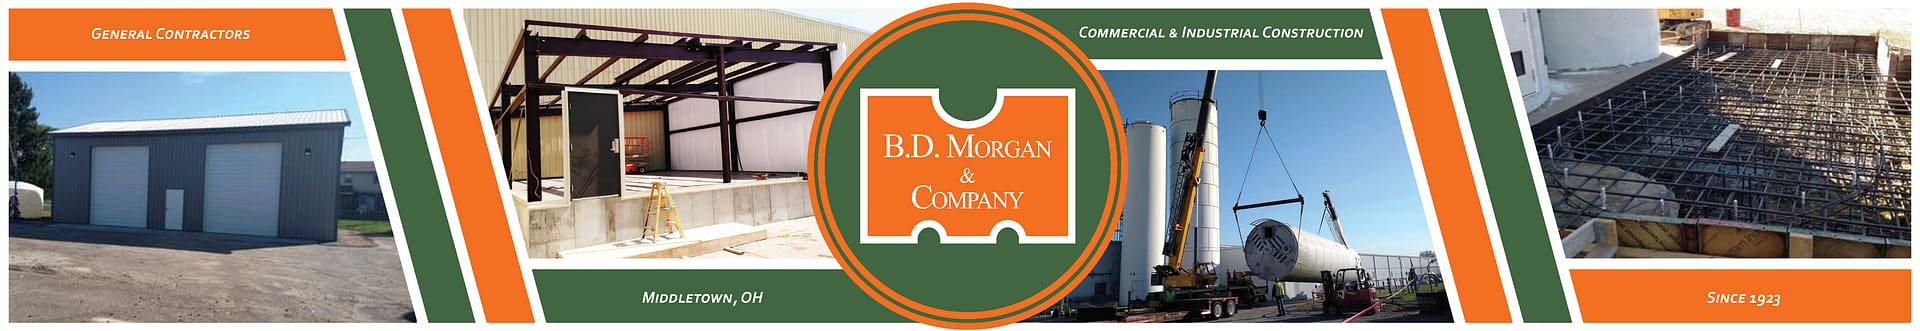 B.D. MORGAN & COMPANY, INC.